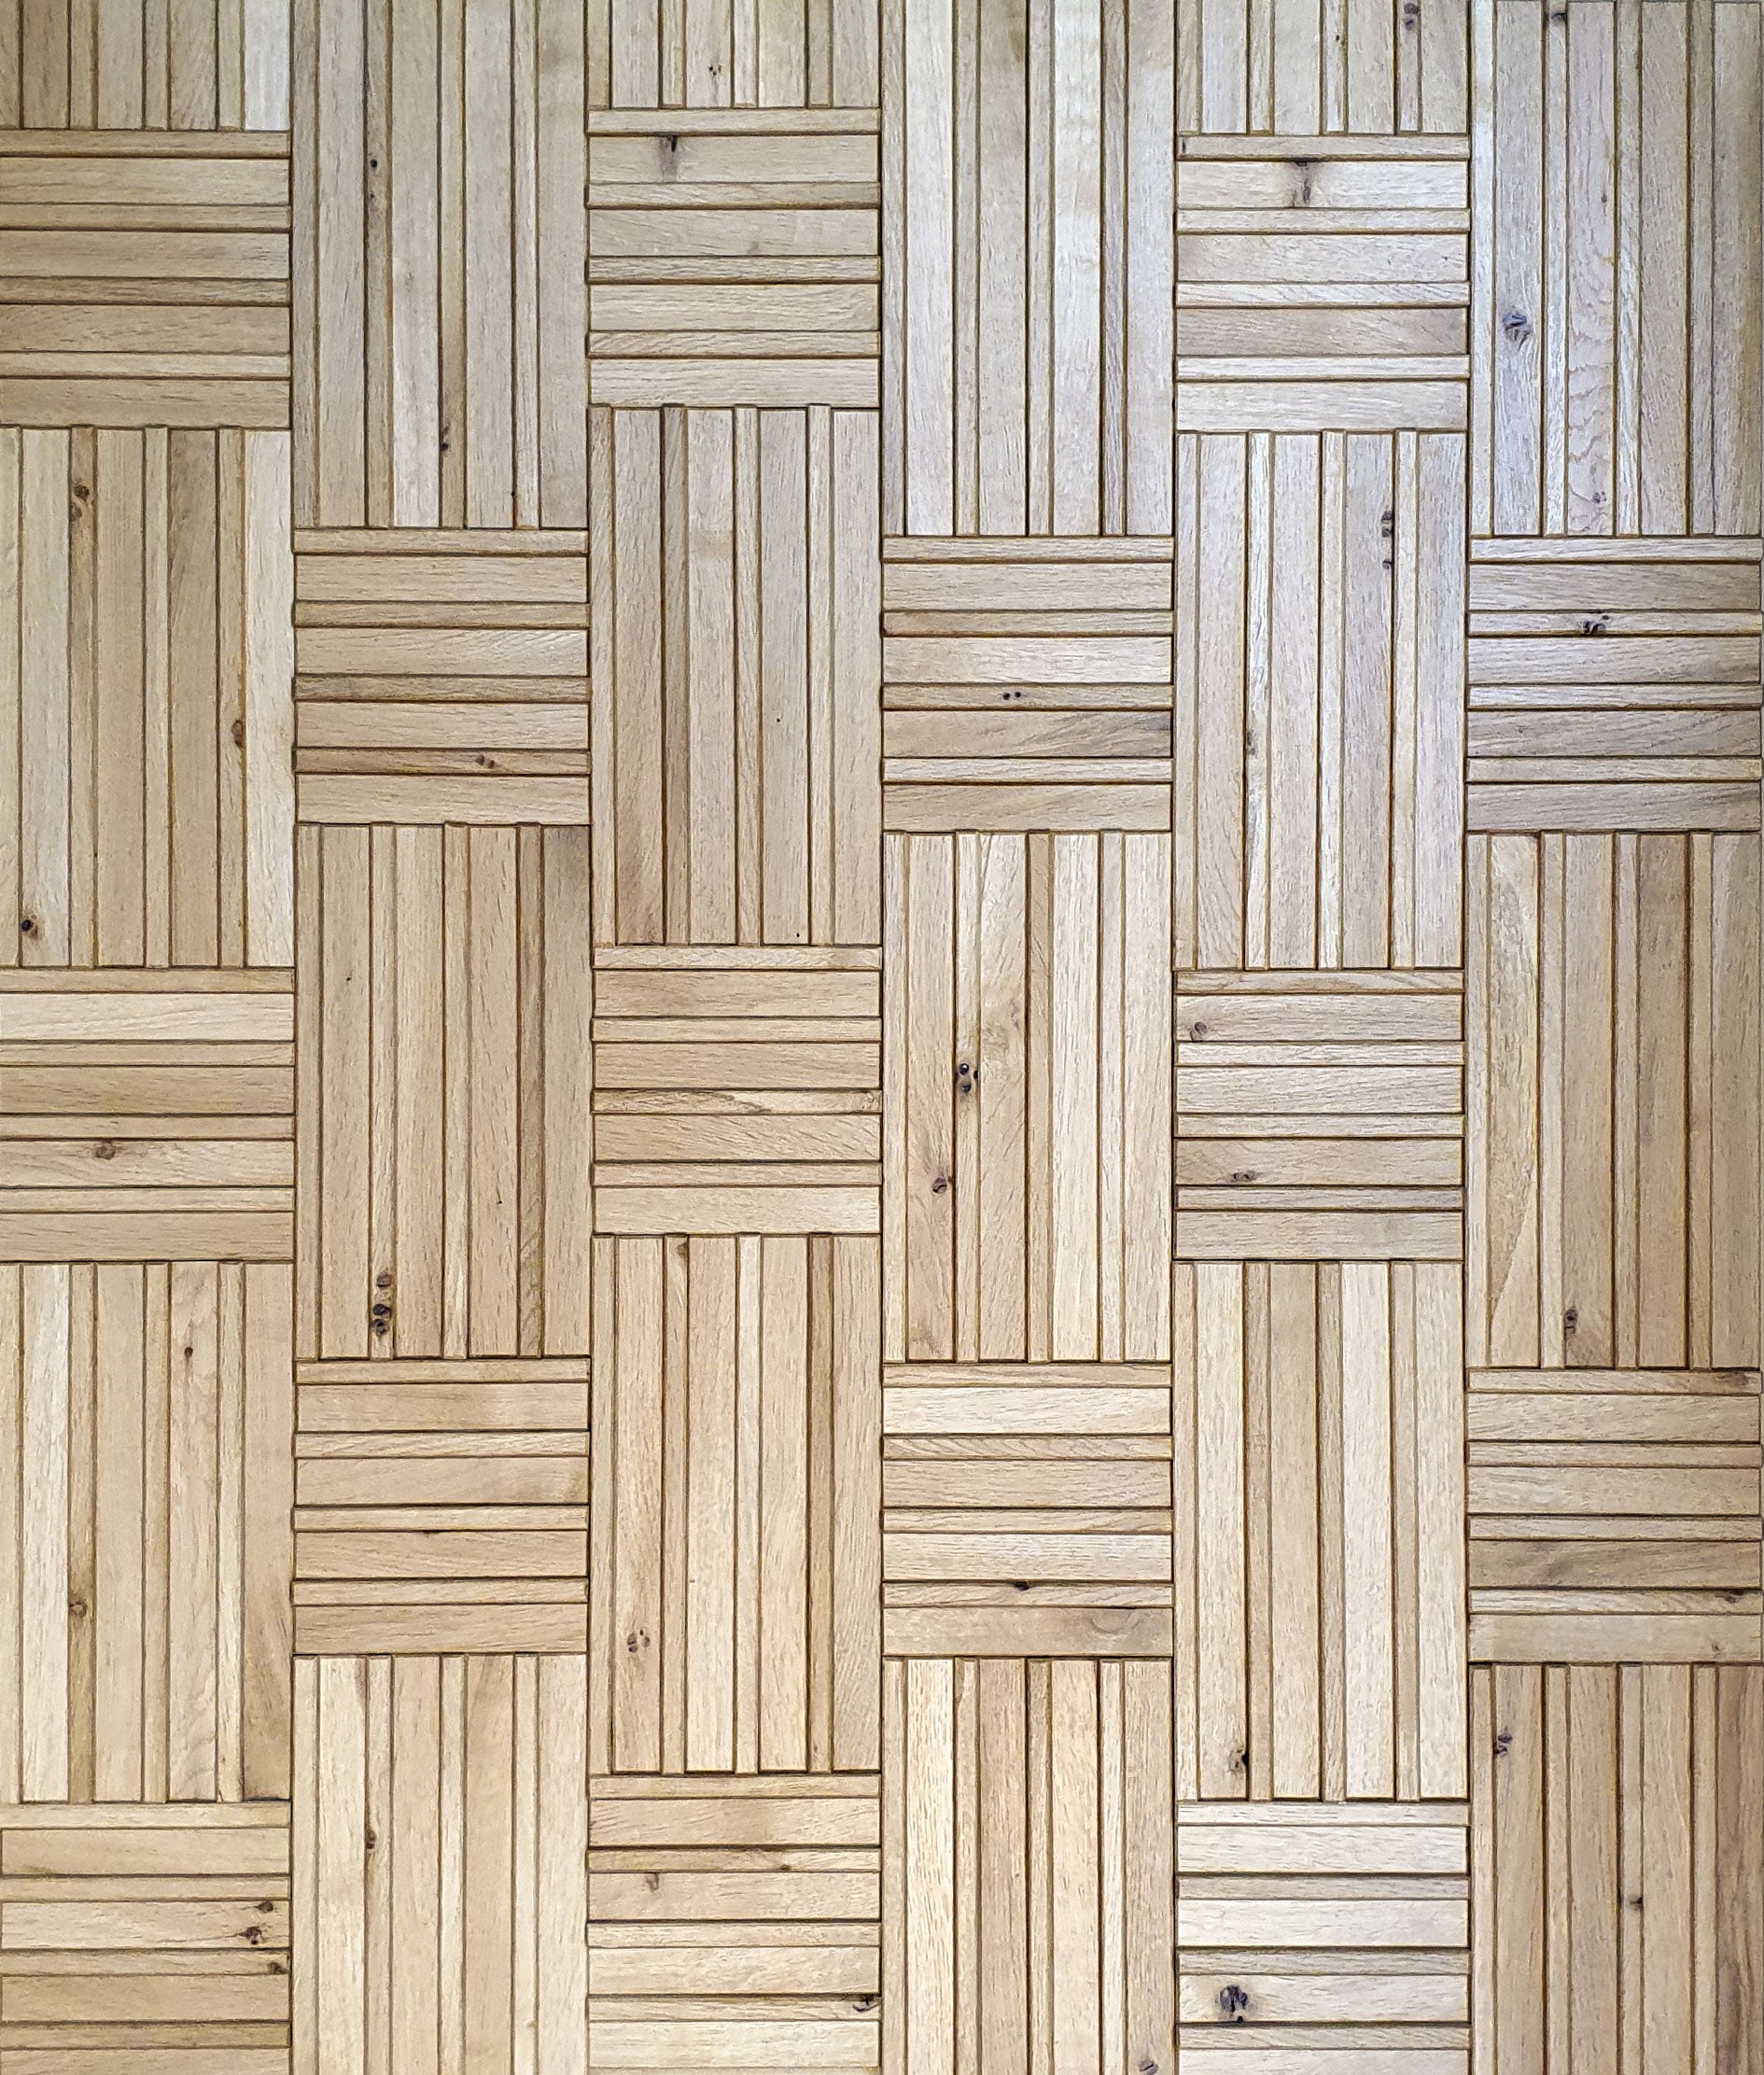 oak wall woven pattern